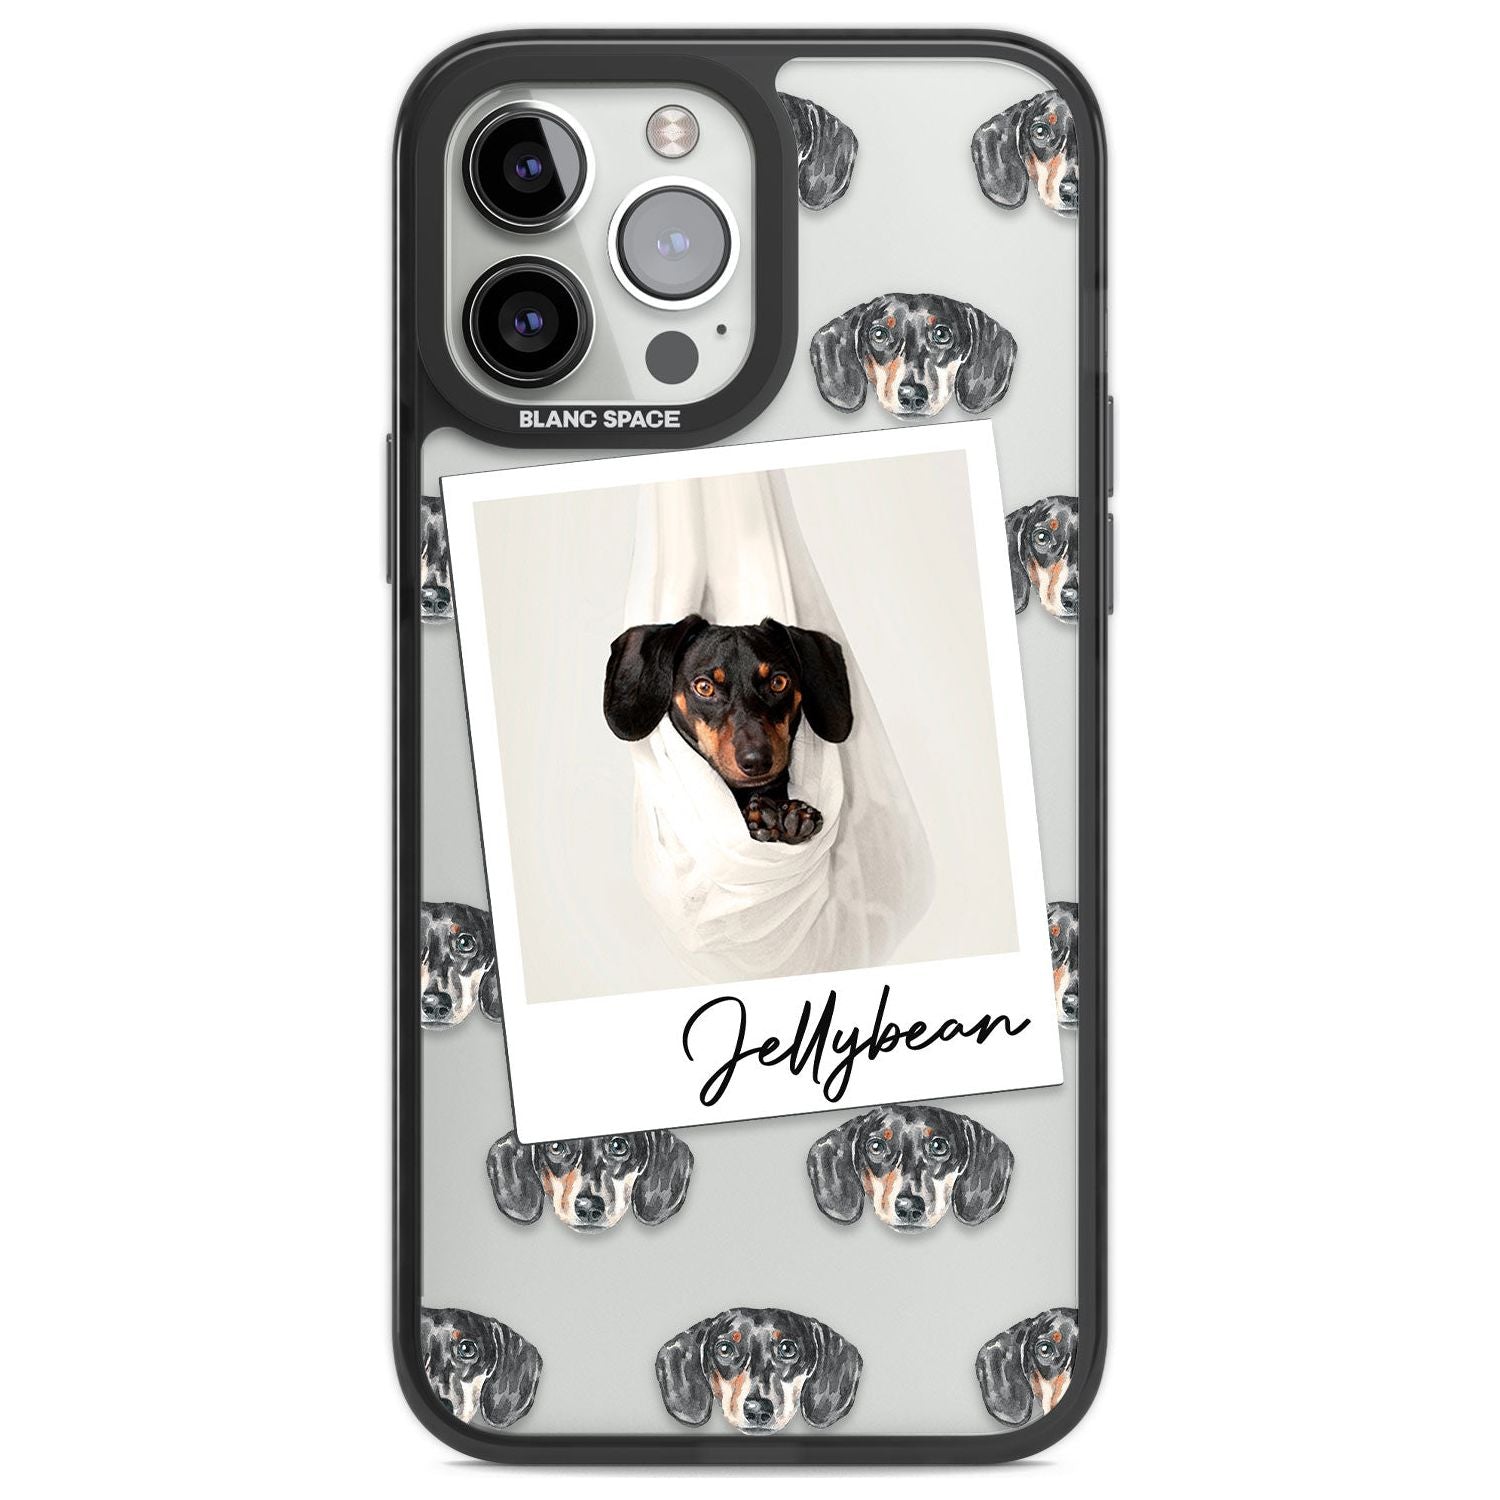 Personalised Dachshund, Black- Dog Photo Custom Phone Case iPhone 13 Pro Max / Black Impact Case,iPhone 14 Pro Max / Black Impact Case Blanc Space